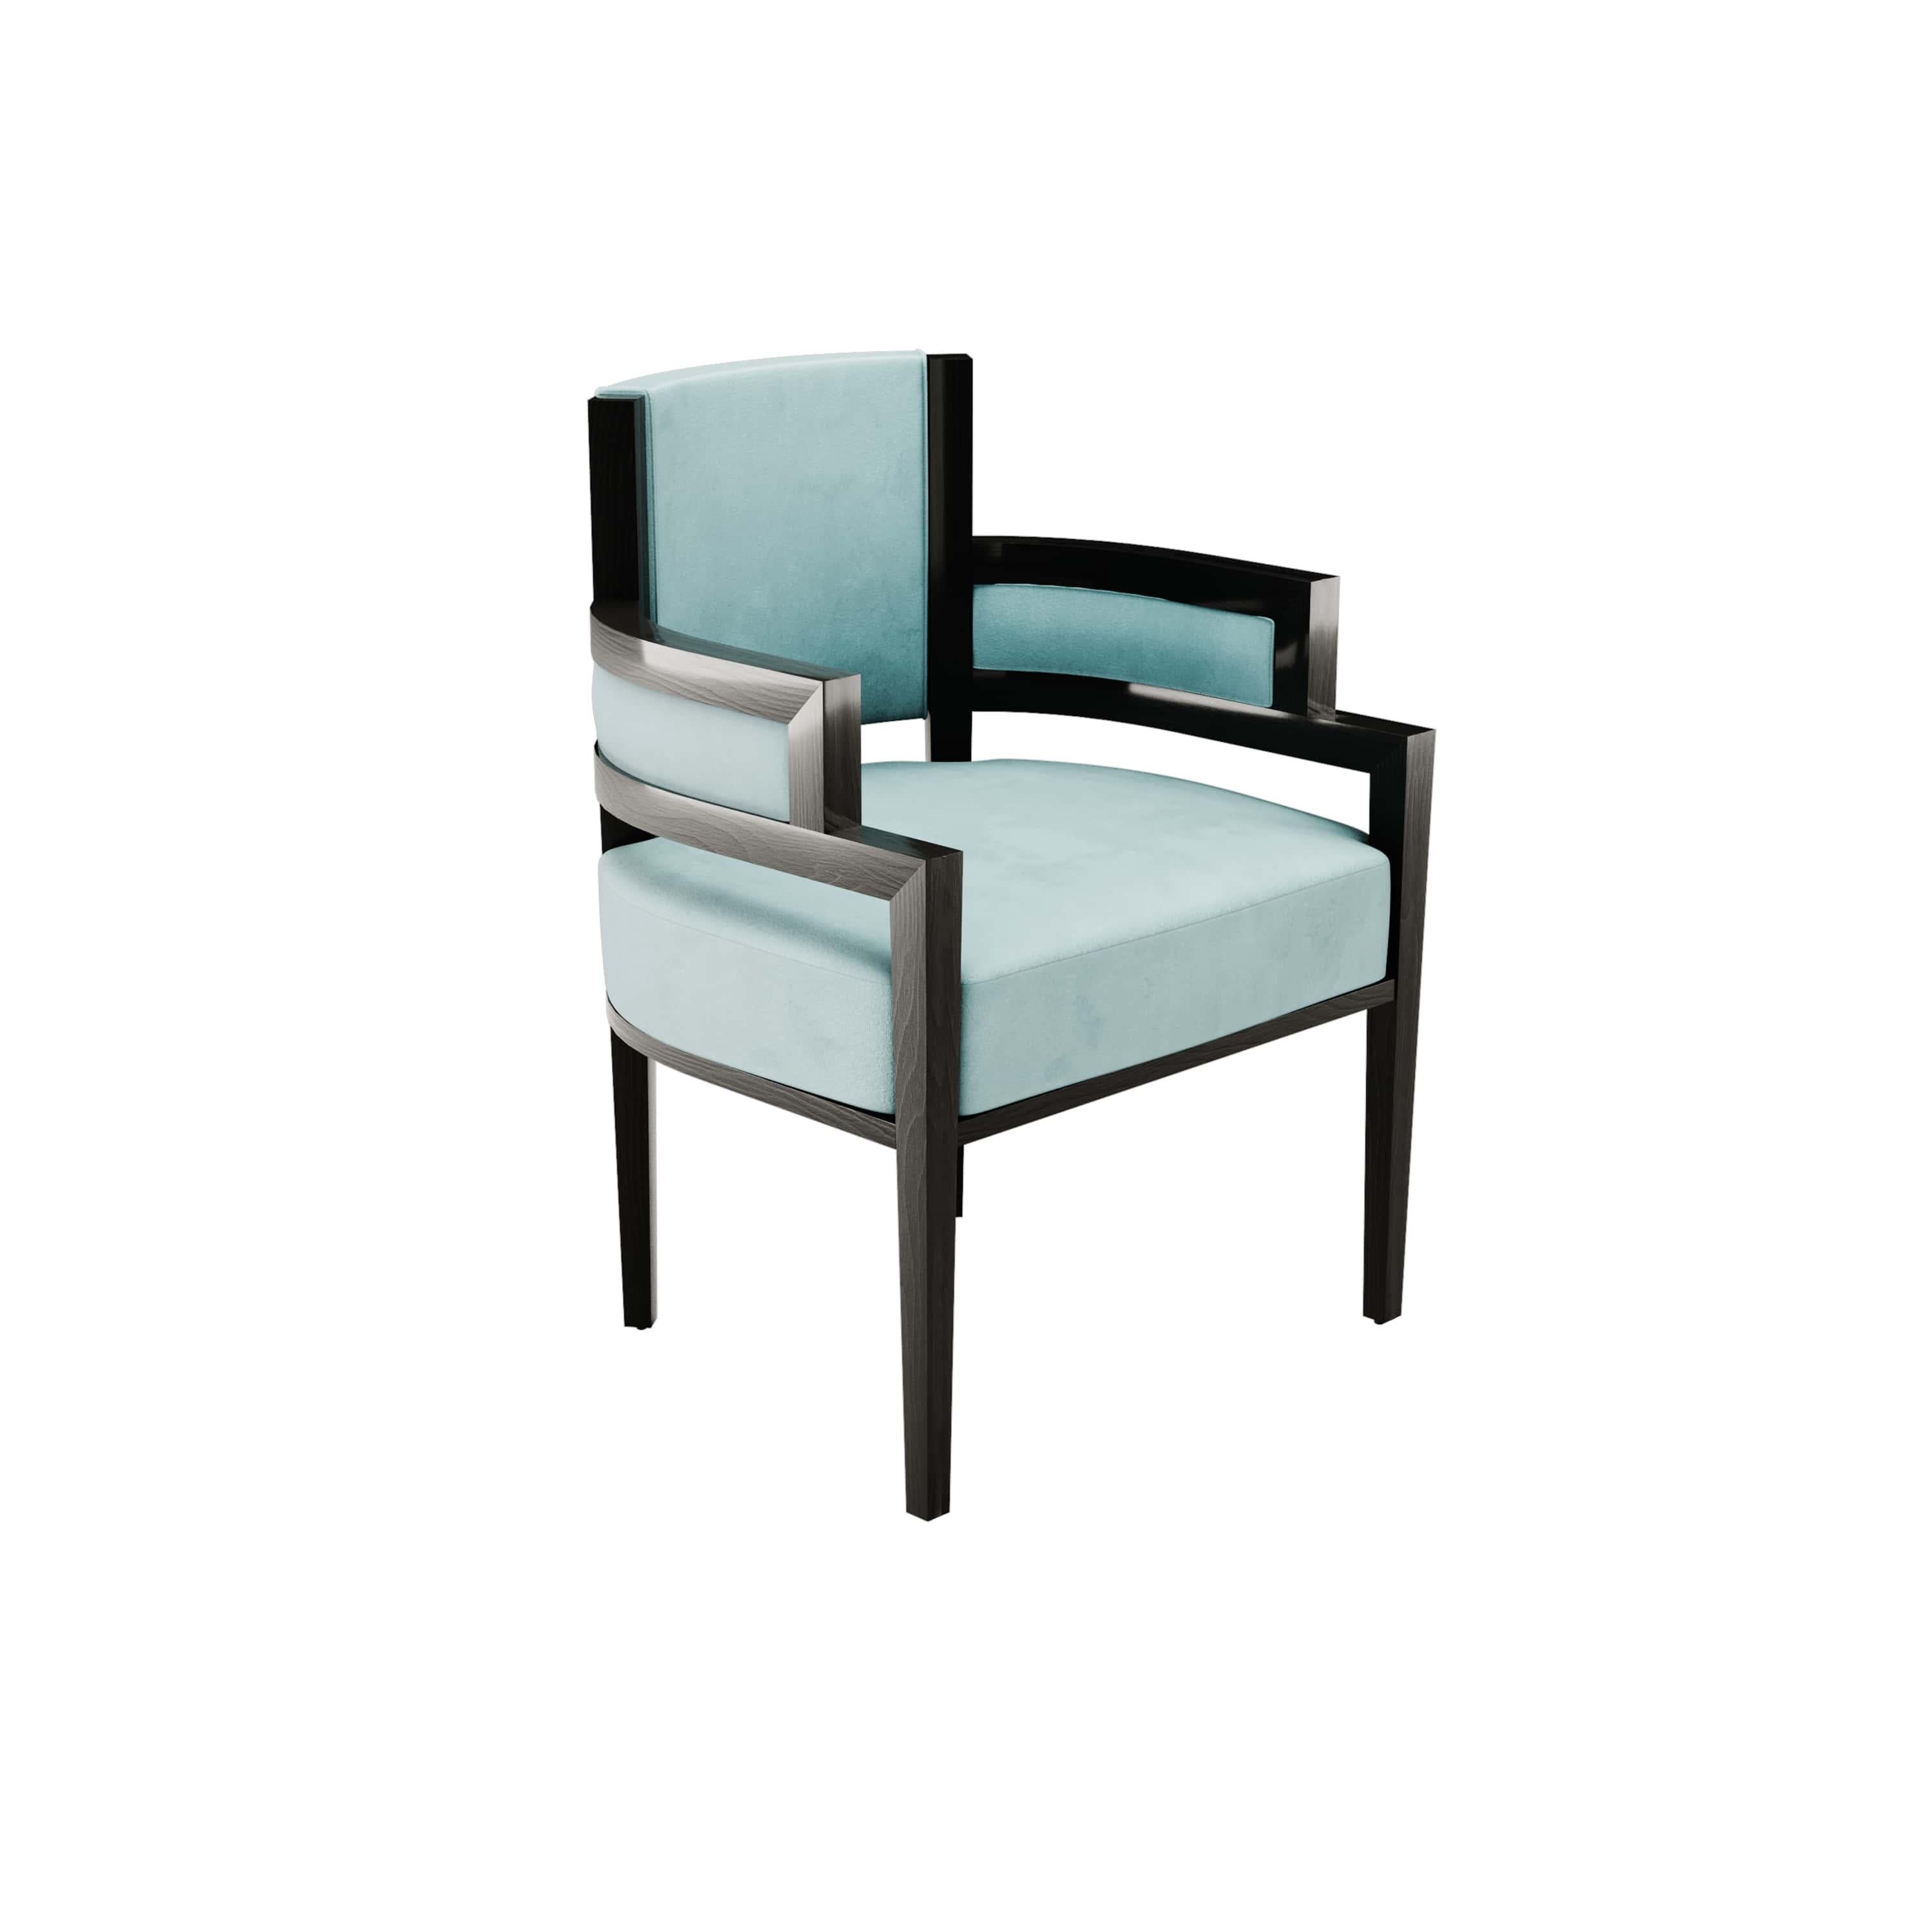 La chaise Pina est une chaise de salle à manger de style art déco dont la forme offre le meilleur confort aux convives. Elle est recouverte de velours et dotée d'une structure en bois moderne. Parfait pour les projets de salle à manger moderne qui